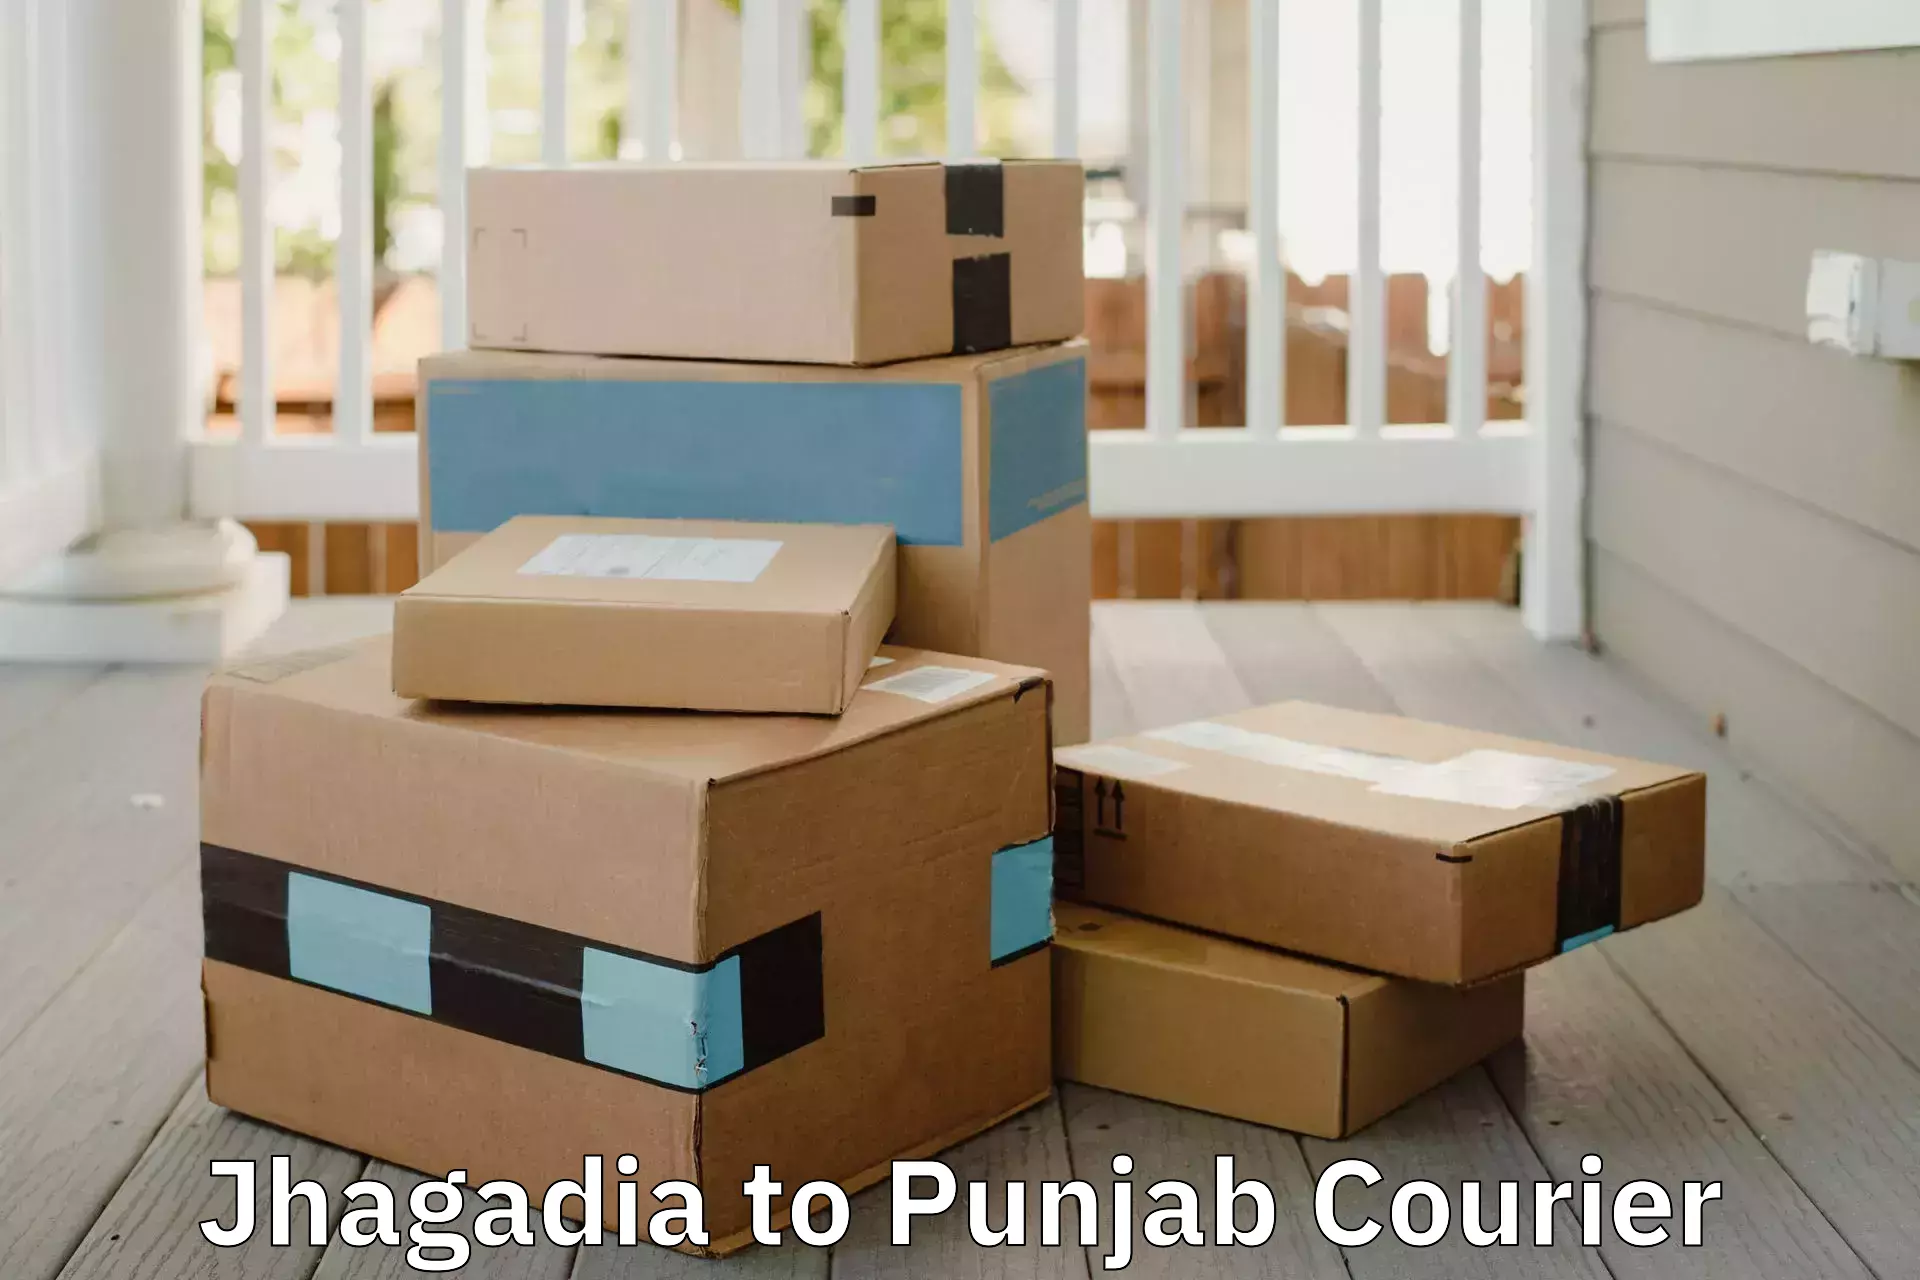 Moving and packing experts Jhagadia to Faridkot